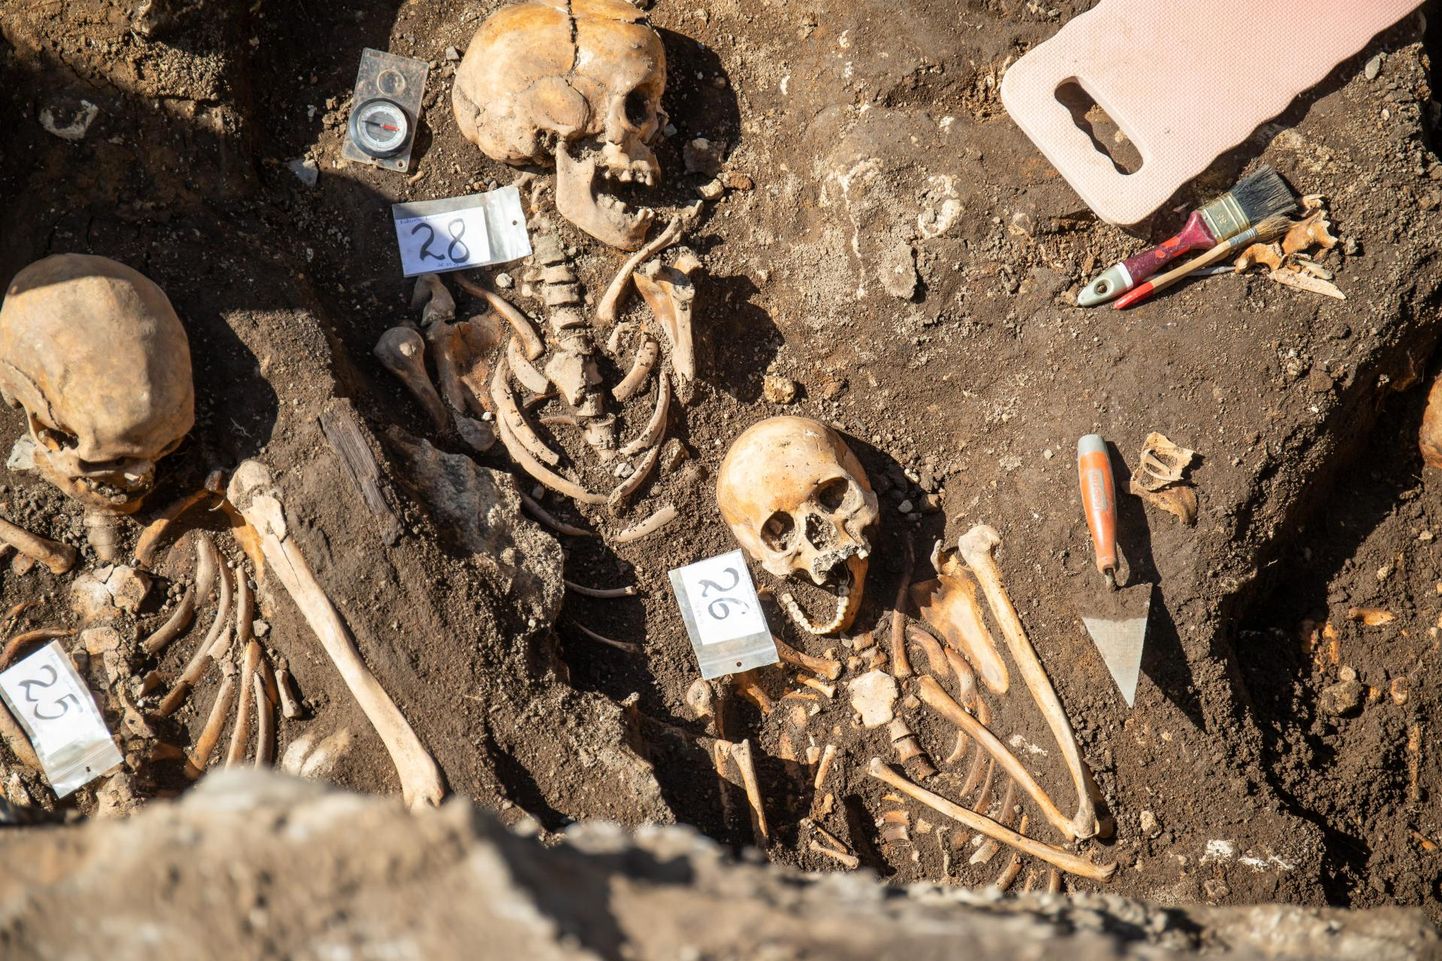 Сравнительно хорошо сохранившиеся скелеты находили на улице Пикк и ранее. Скелеты казненных людей были обнаружены впервые.